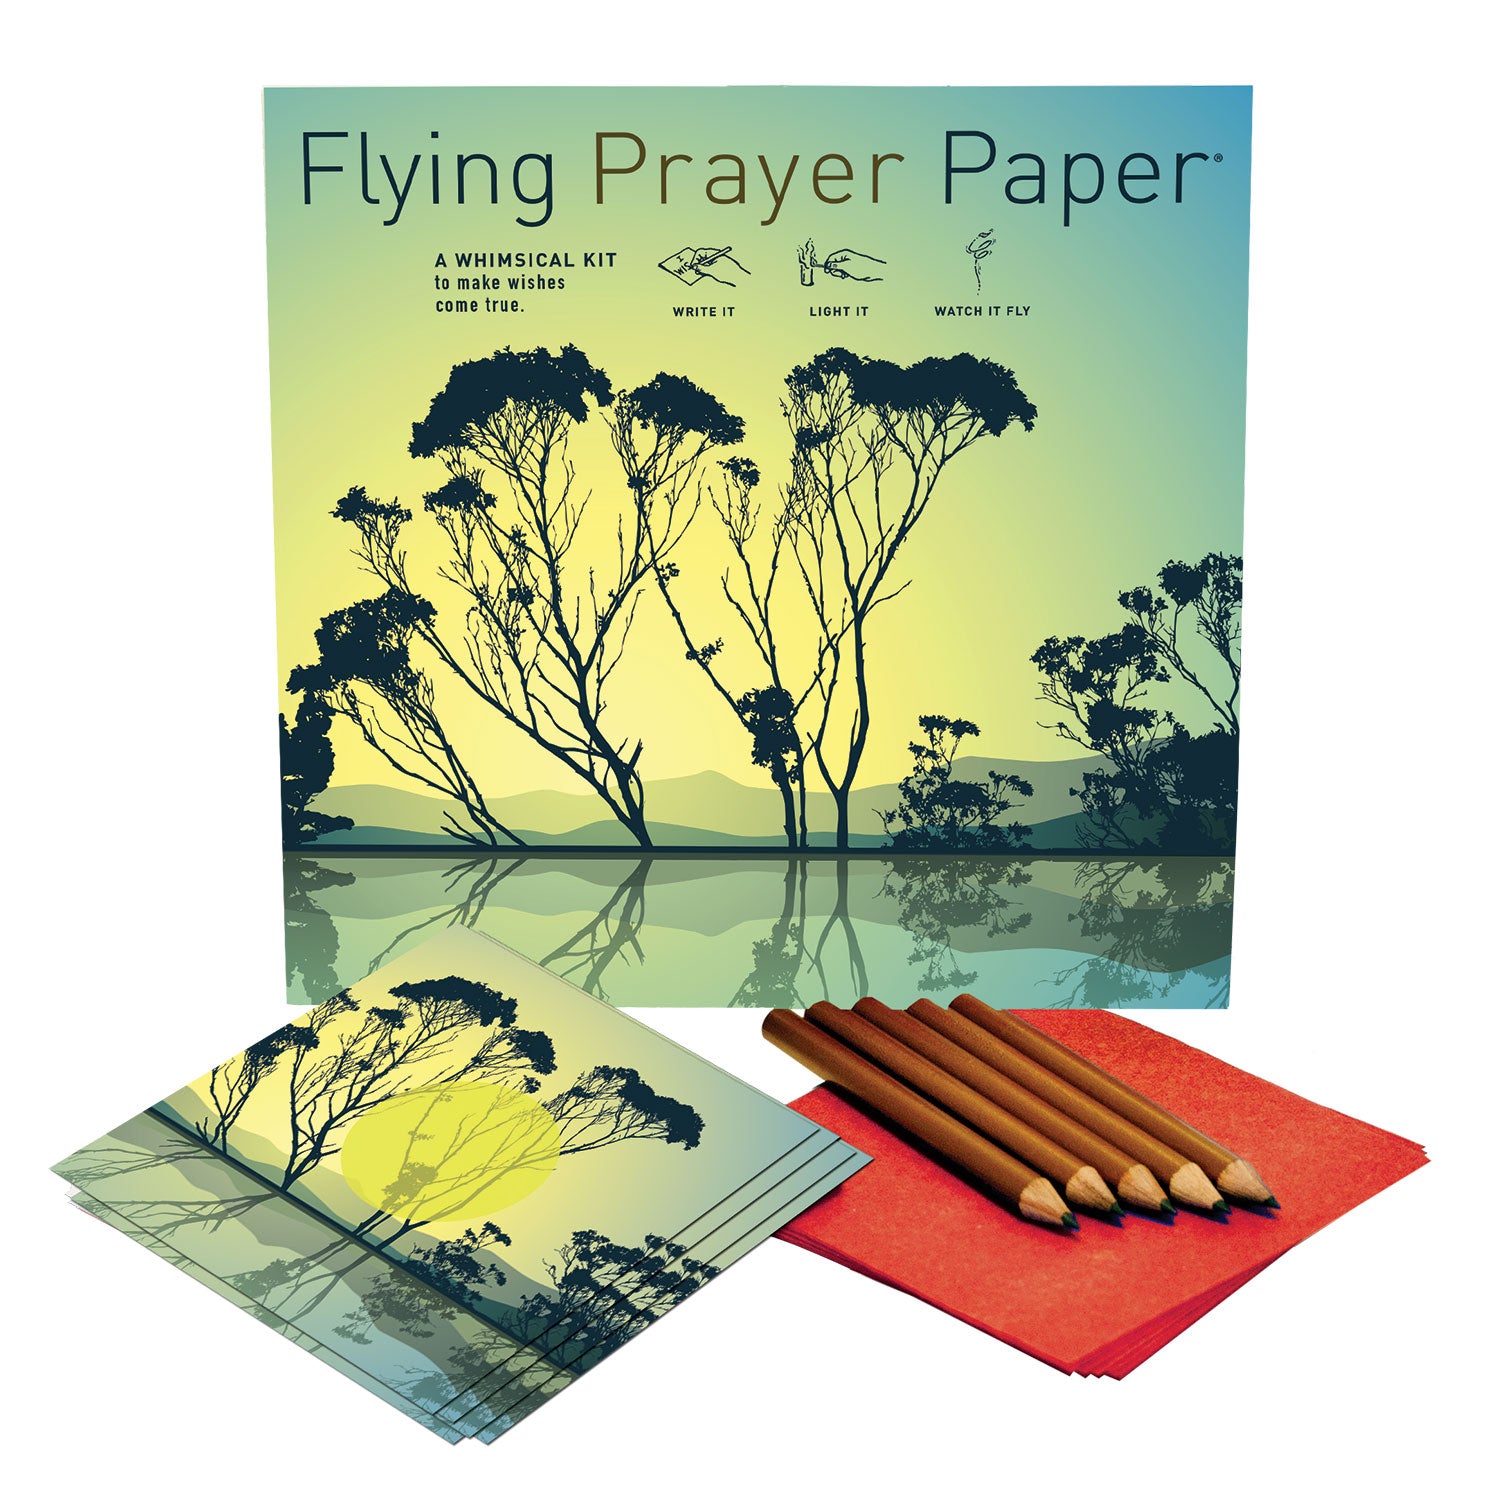 Flying Wish Paper - Red Velvet Card Large Kit - Karmic Inspirations